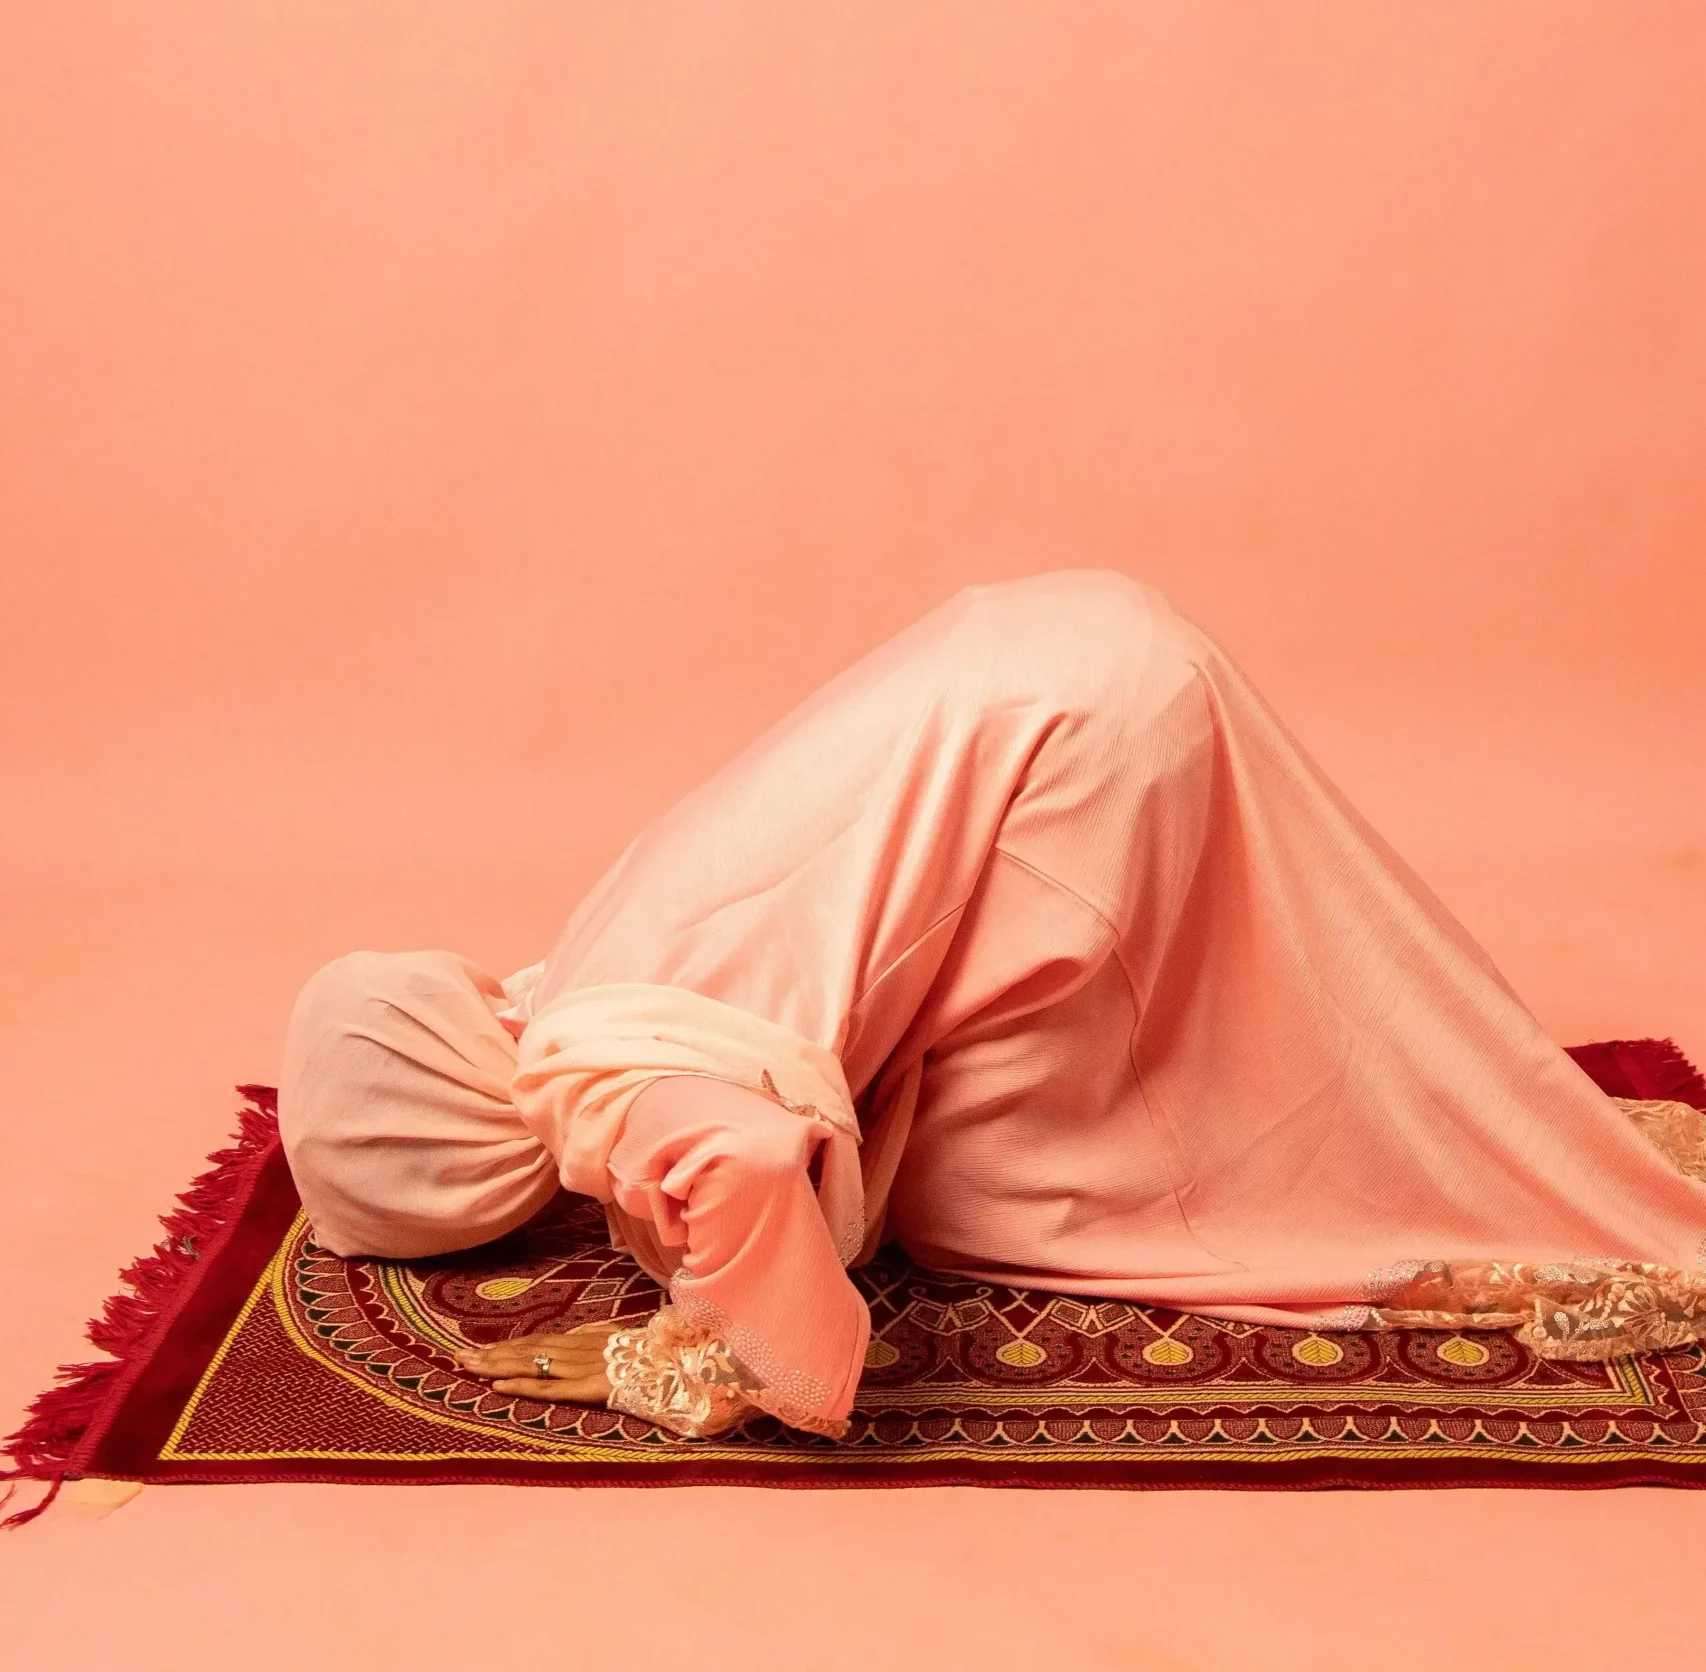 the-devotion-of-muslim-prayer